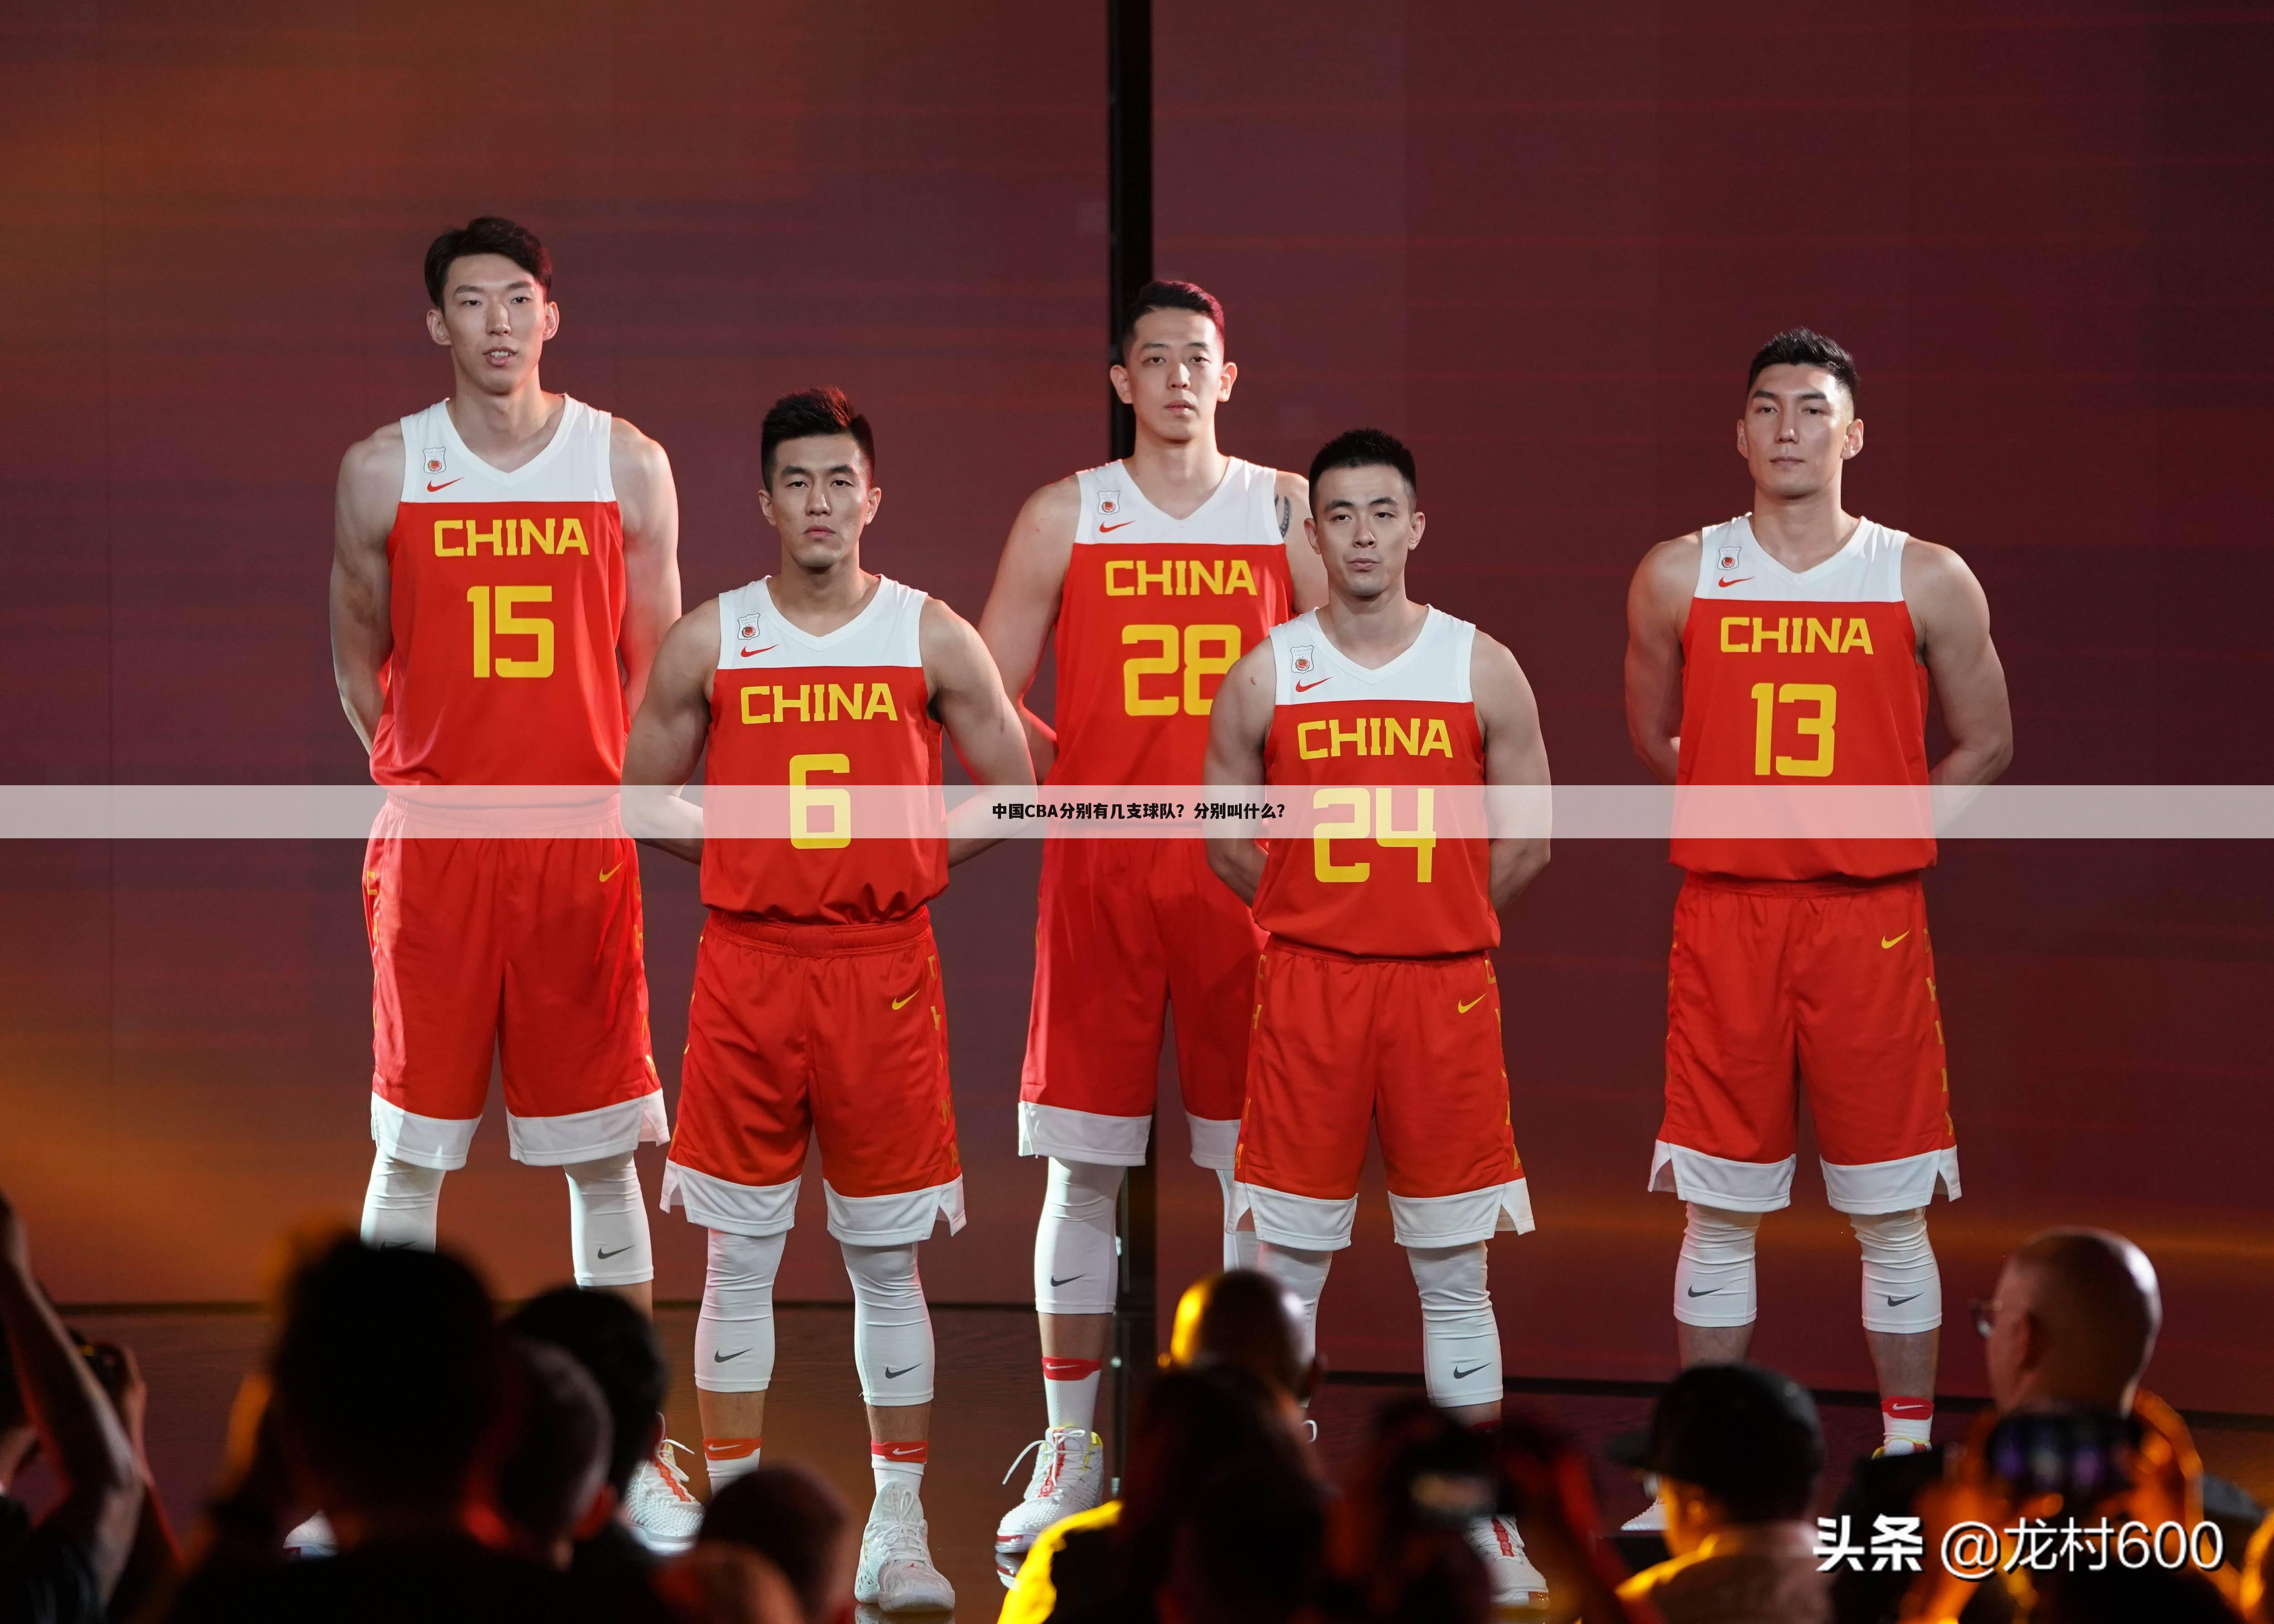 中国CBA分别有几支球队？分别叫什么？